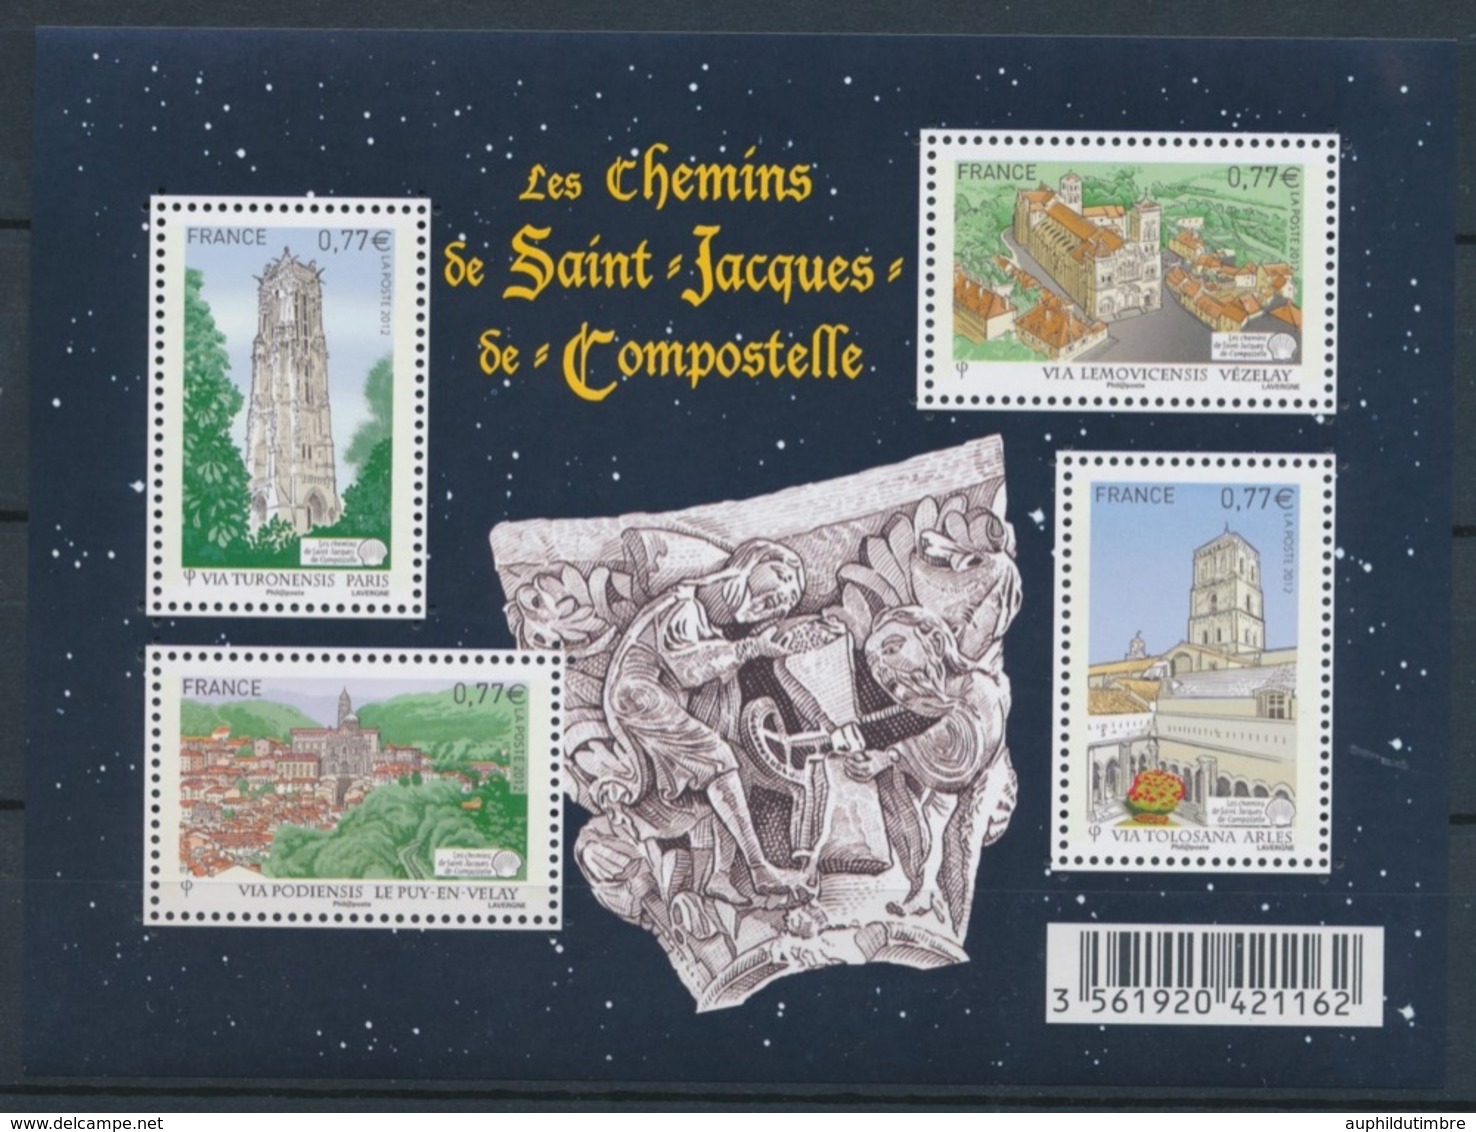 2012 France Bloc Feuillet N°F4641 Les Chemins De St-Jacques-de-compostelle YB4641 - Mint/Hinged